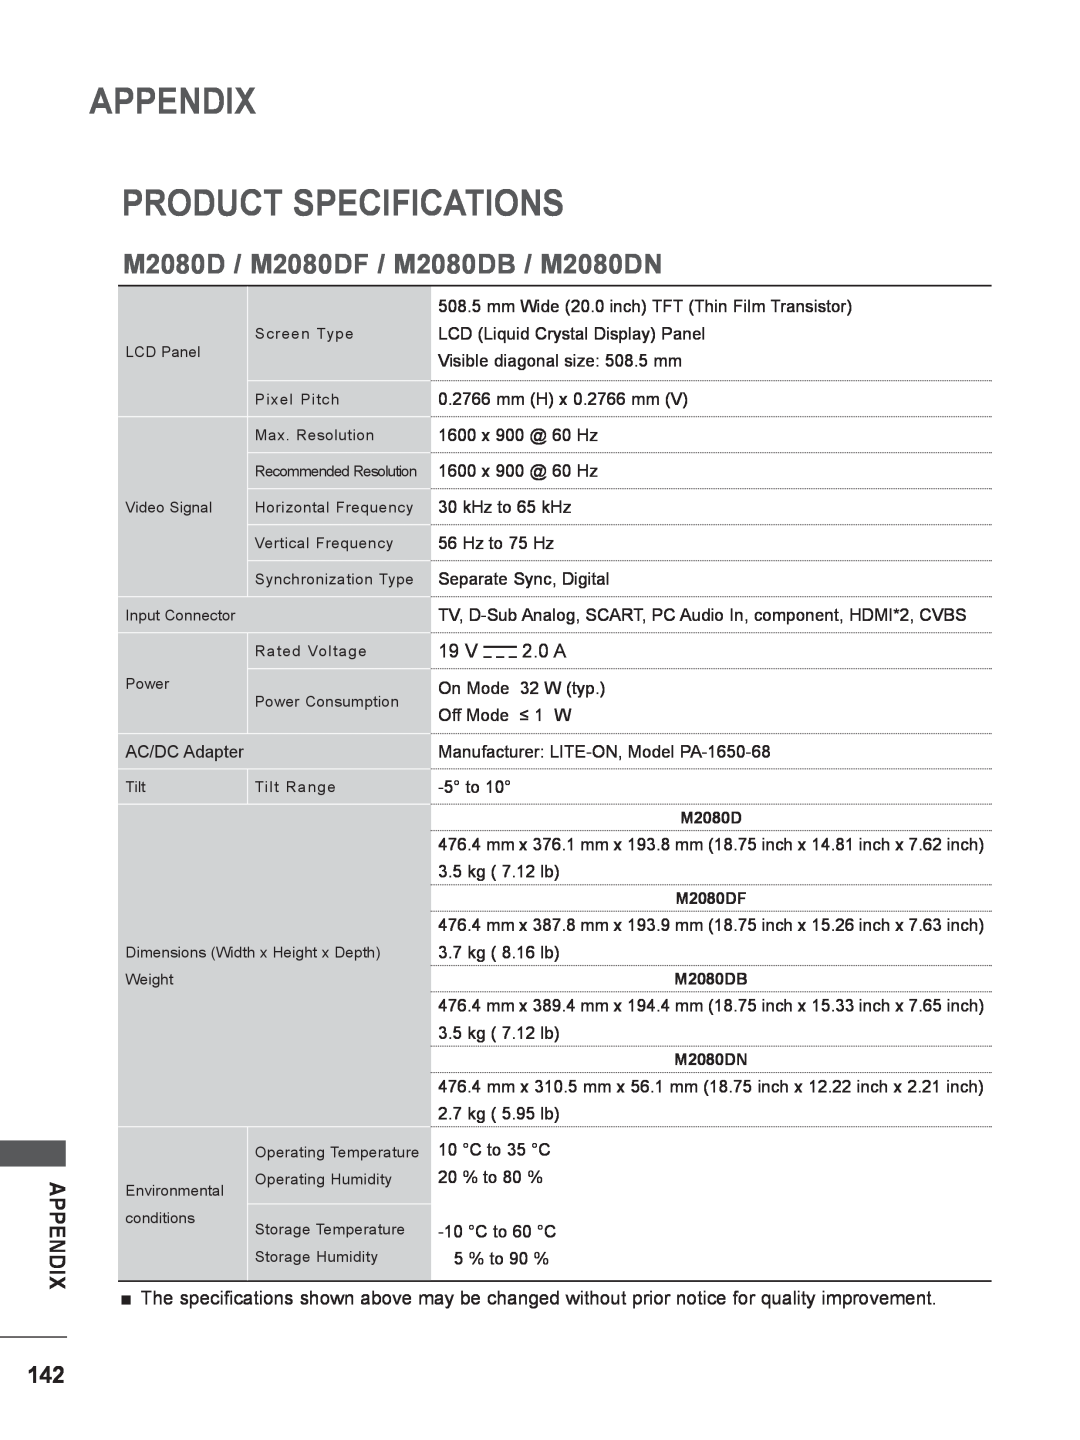 LG Electronics M2280D, M2780DF, M2780DN, M2380DN Appendix Product Specifications, M2080D / M2080DF / M2080DB / M2080DN 